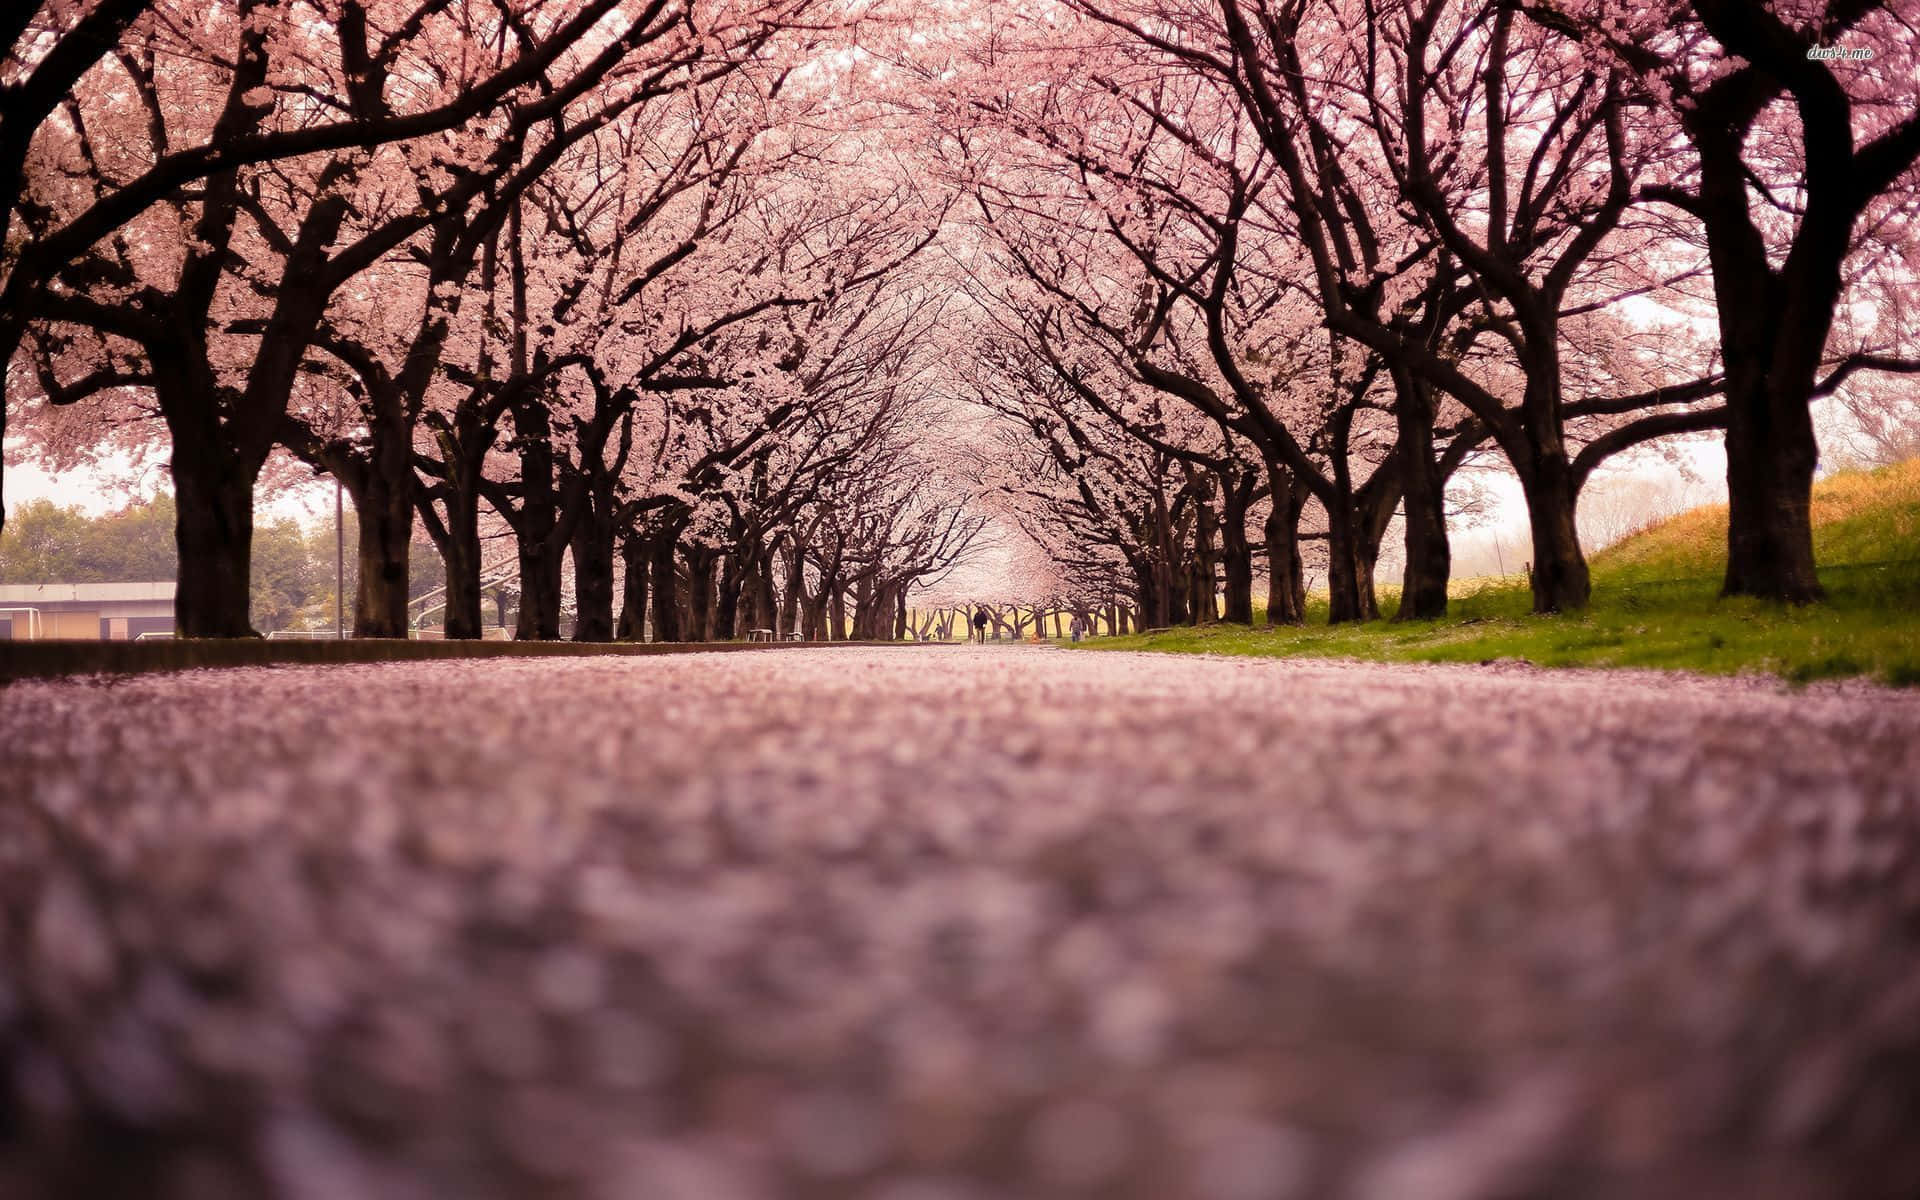 Enlevande Och Fantastisk Utsikt Över Japan I Morgonljuset, Målad I Rosa. Wallpaper